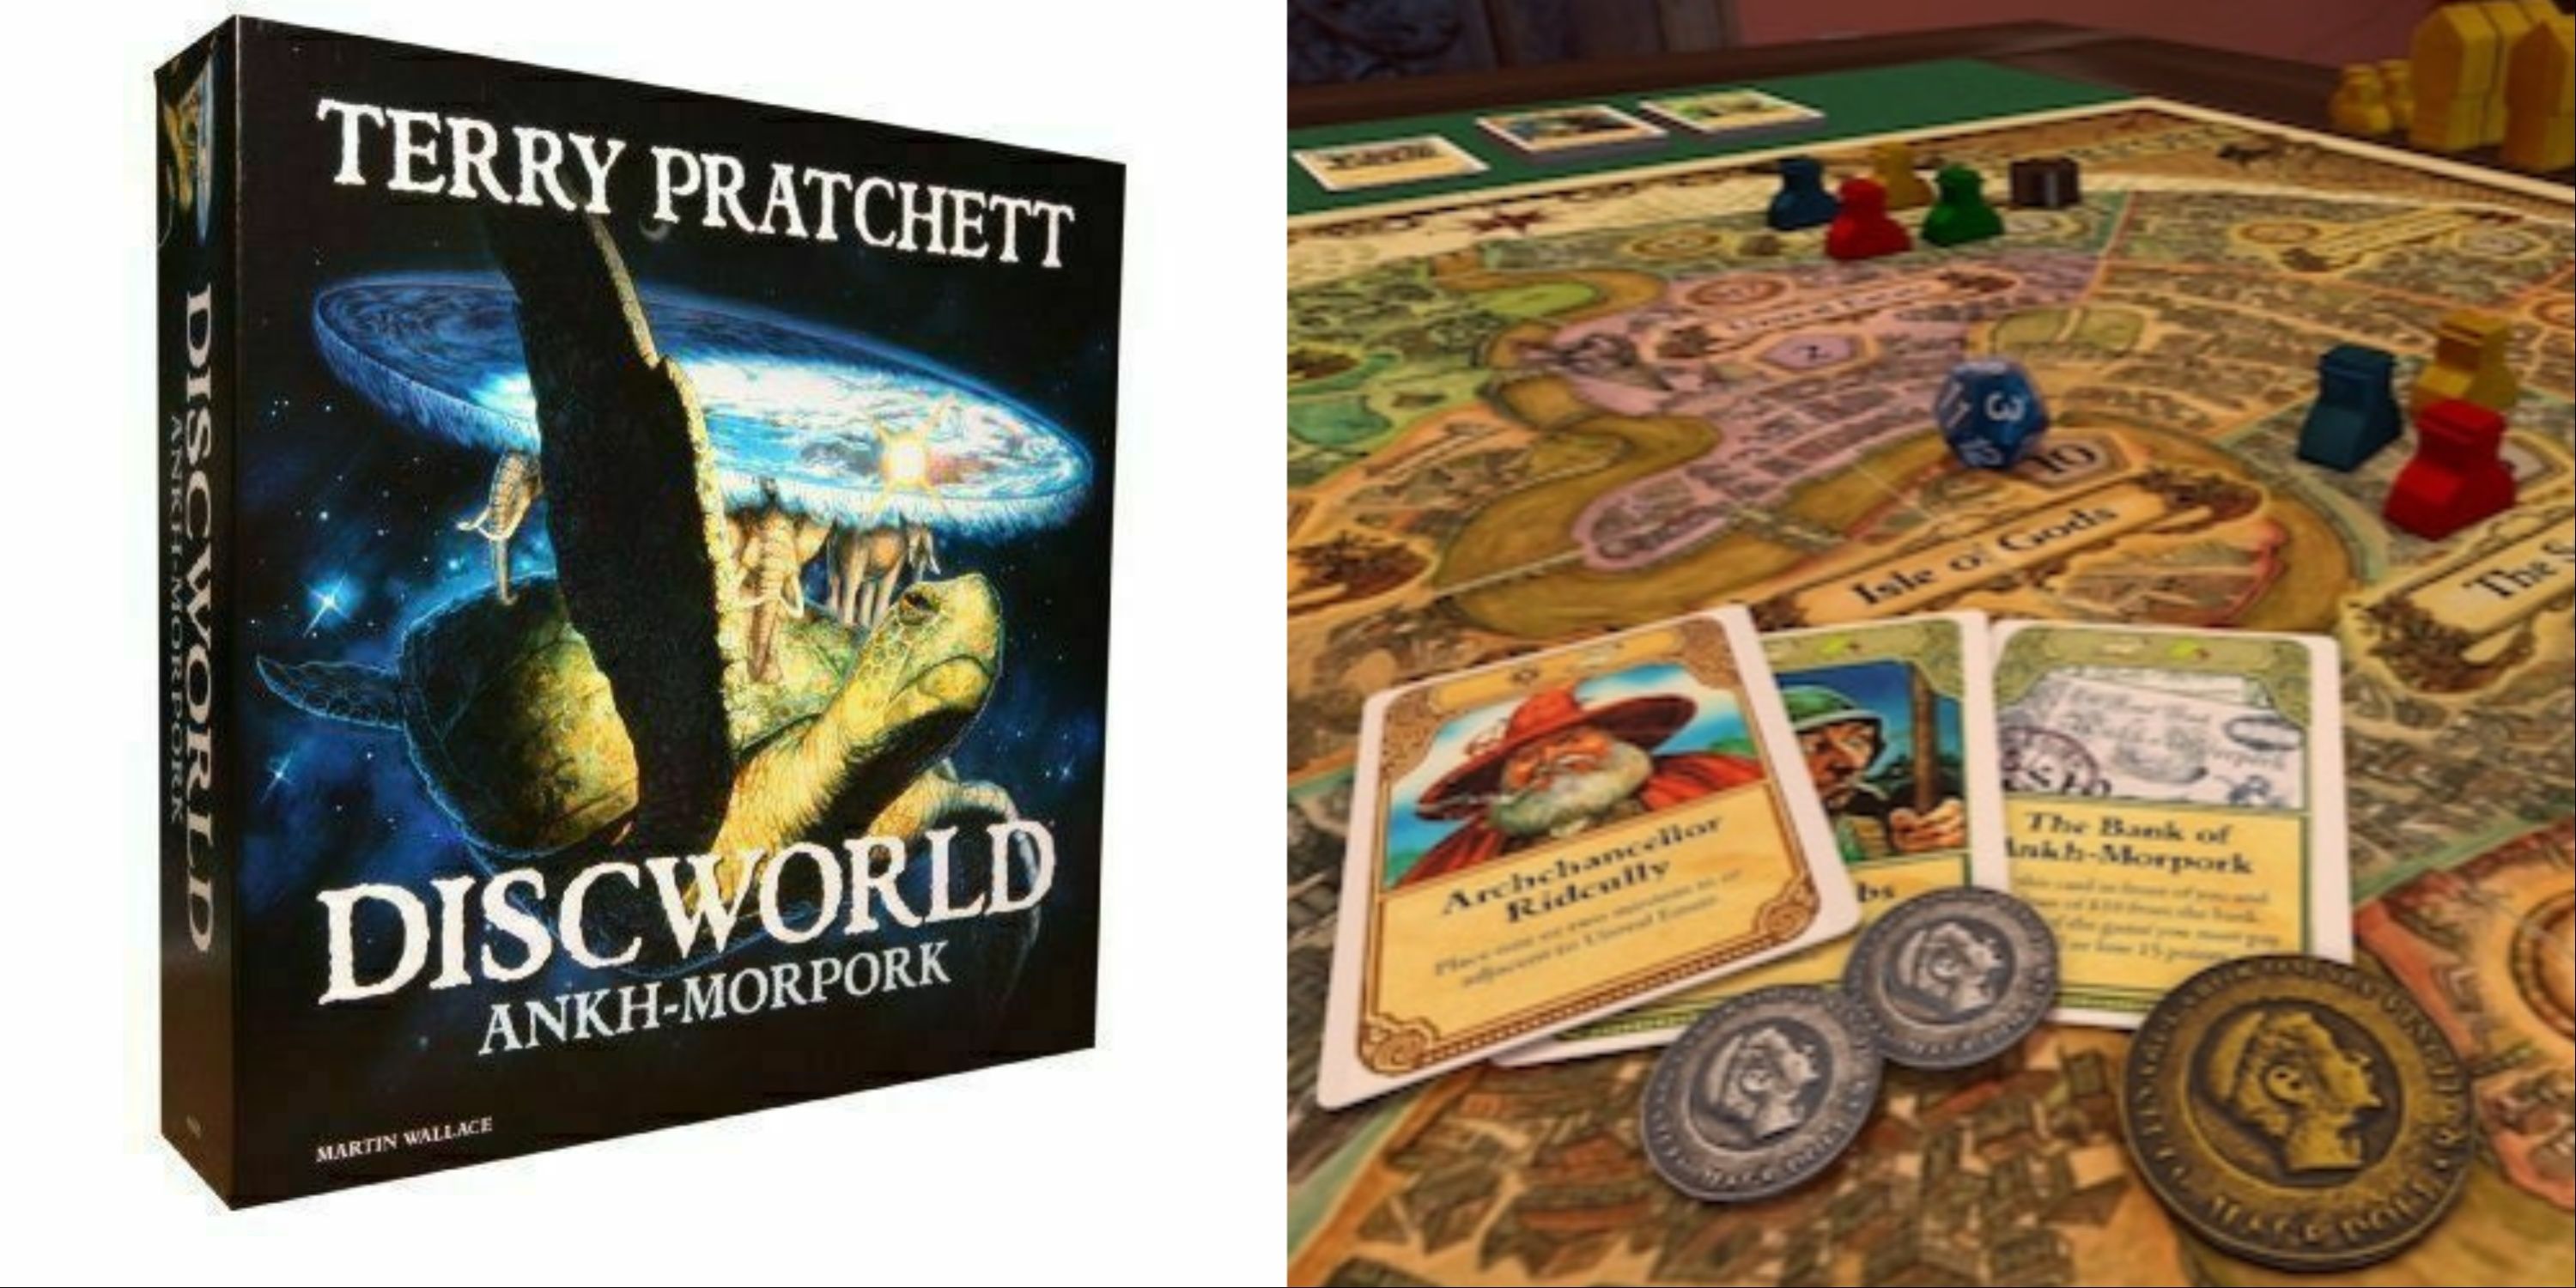 Discworld: Ankh-Morpork BG Box